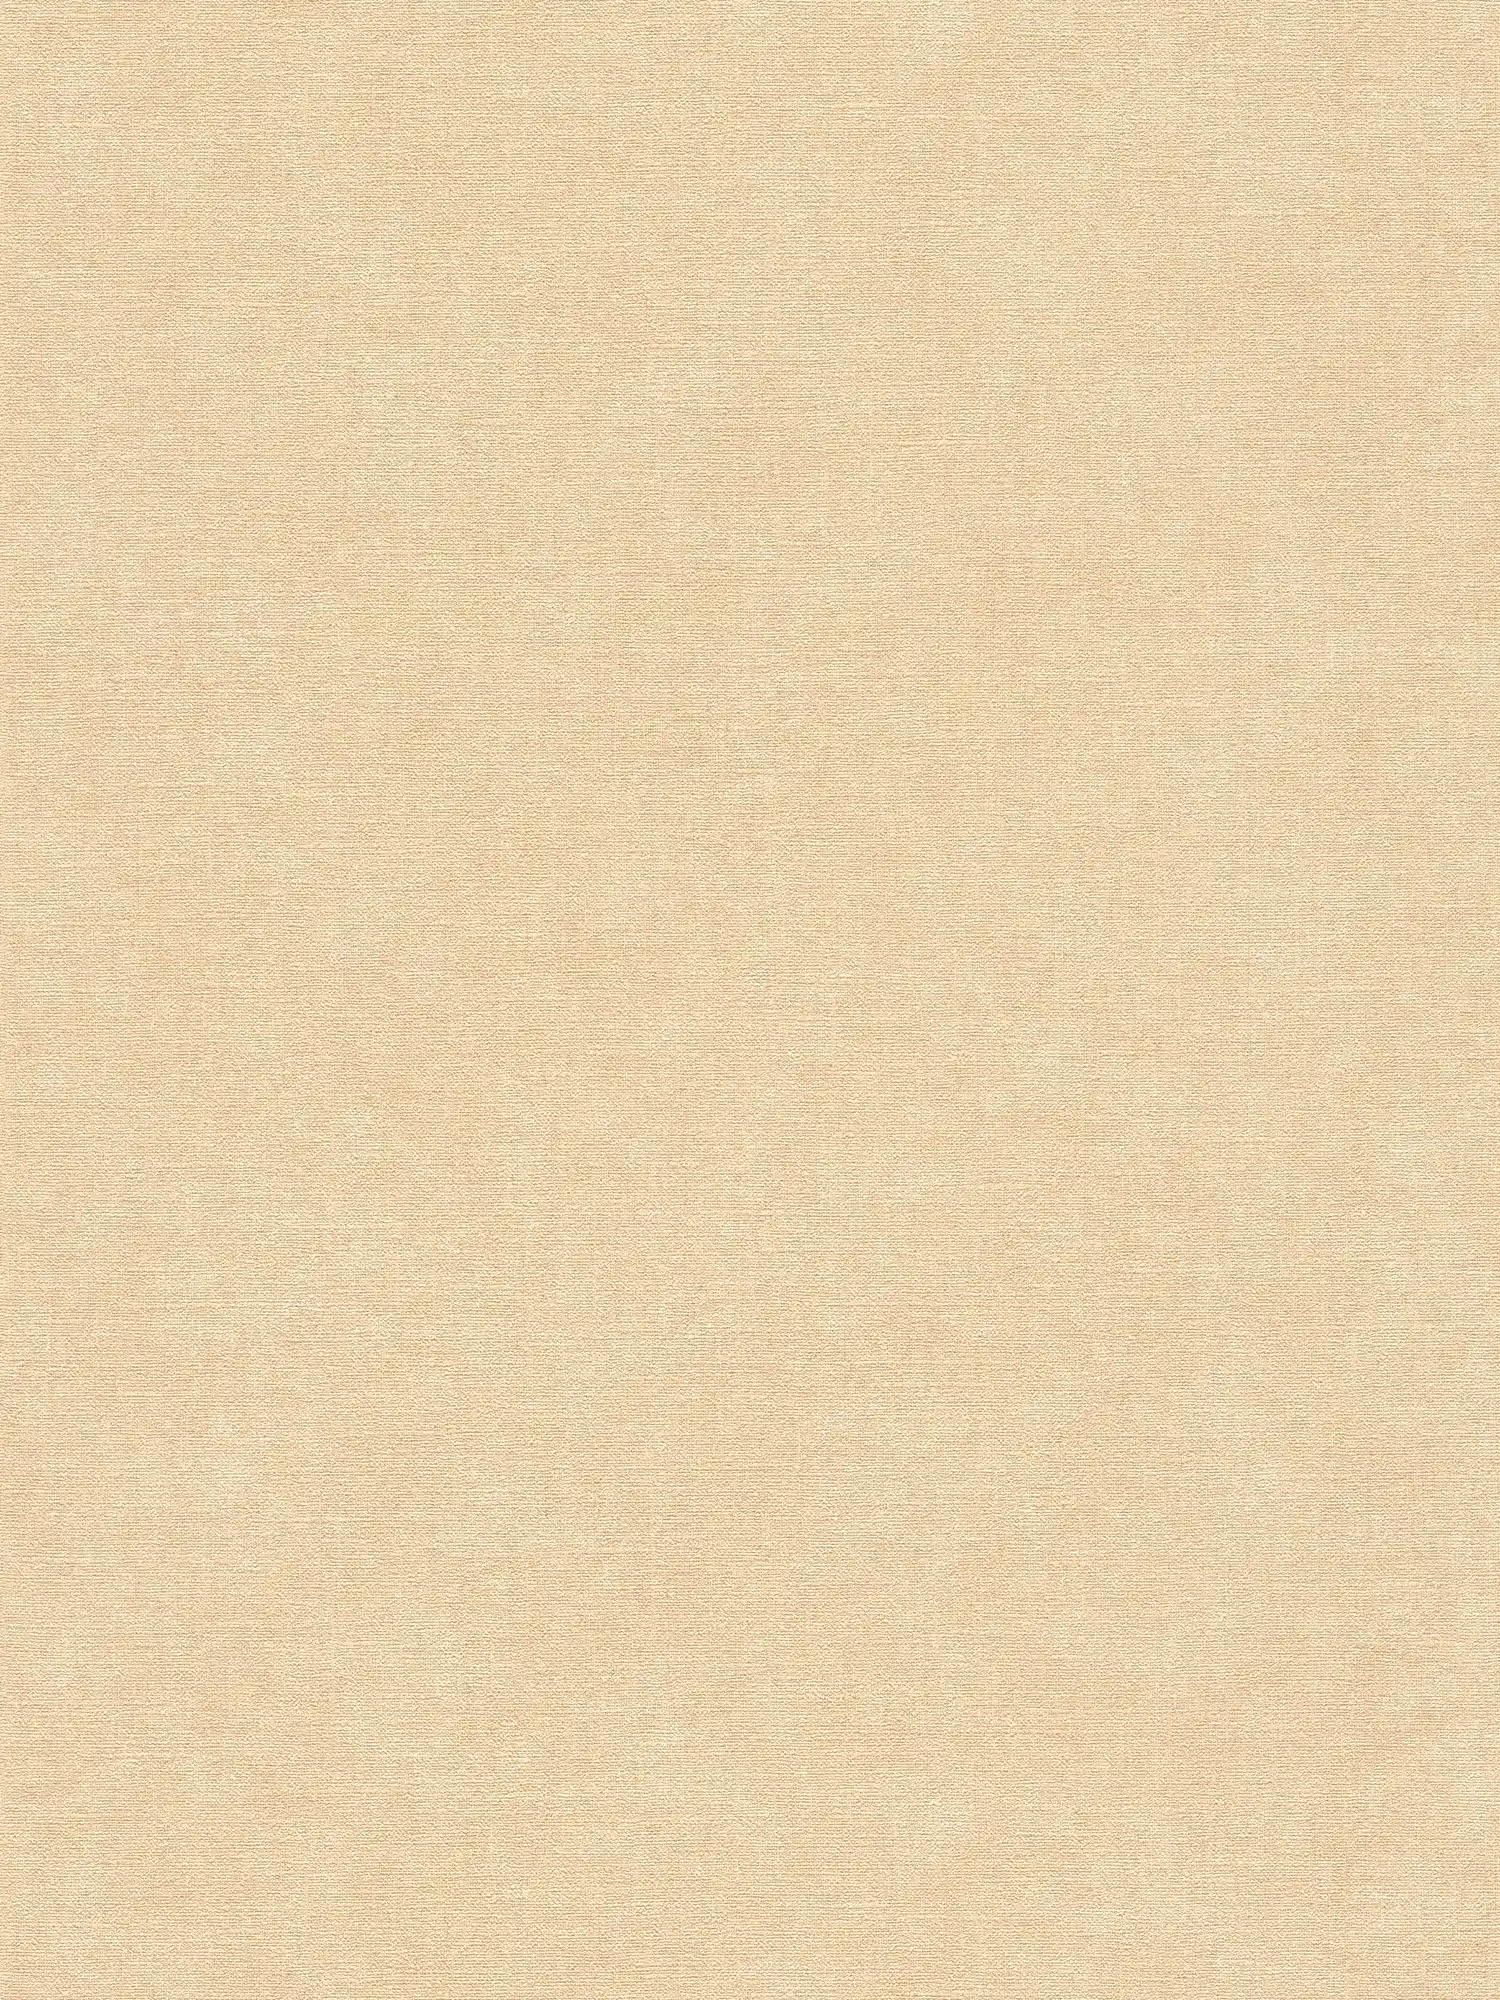 Effen vliesbehang in textiellook - beige, bruin
